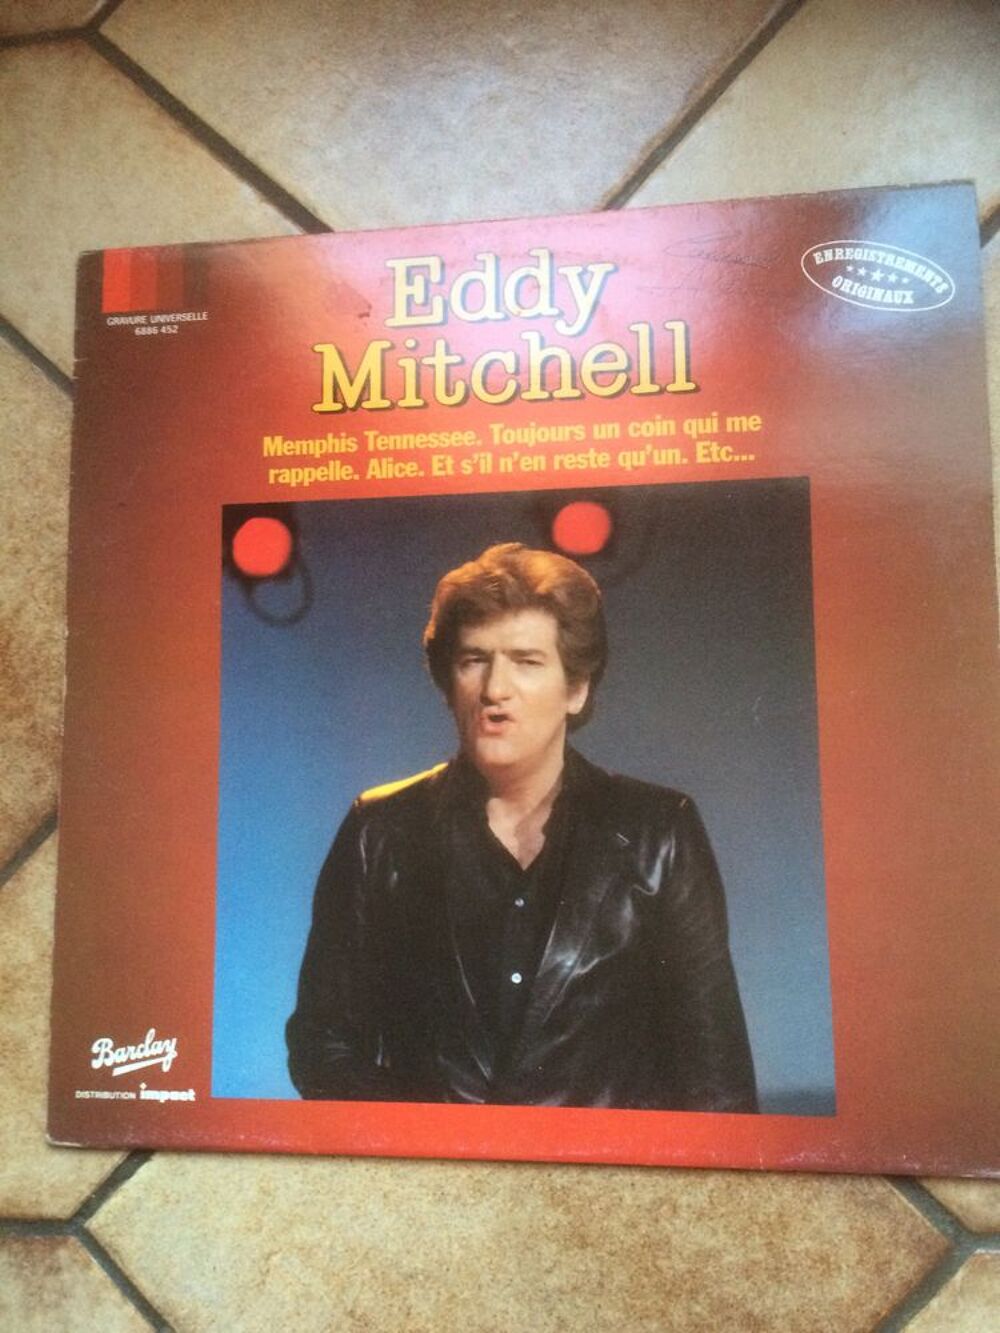 Vinyle 33 tours Eddy Mitchell CD et vinyles